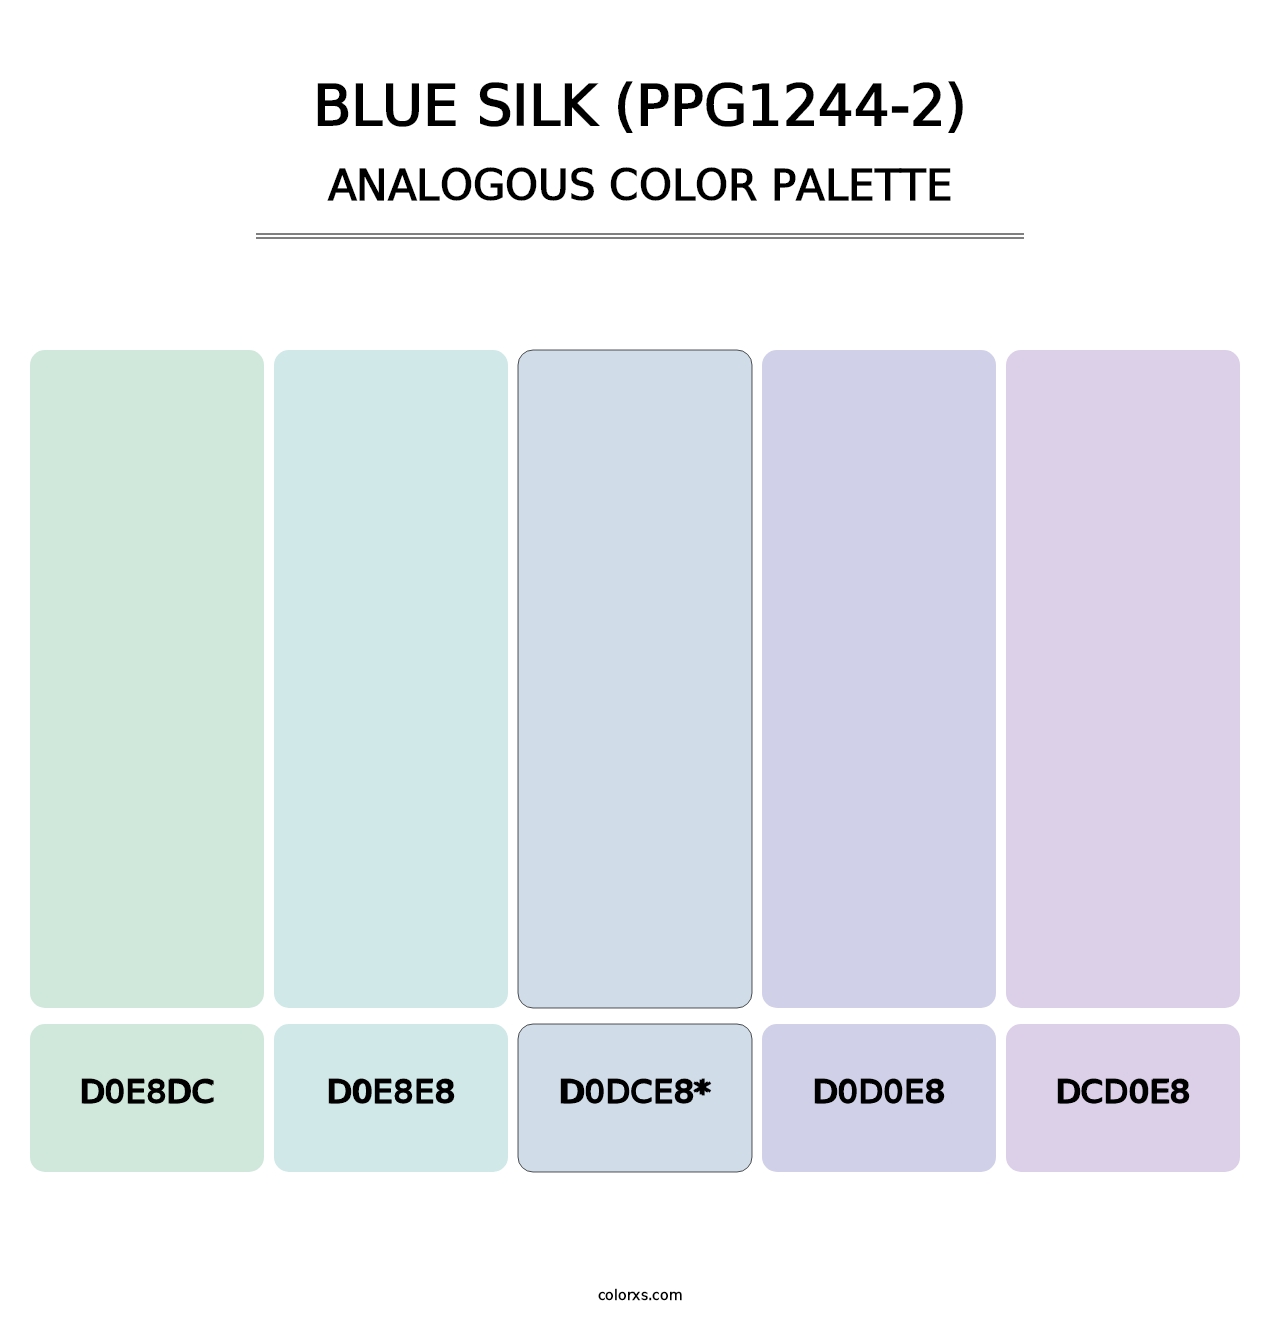 Blue Silk (PPG1244-2) - Analogous Color Palette